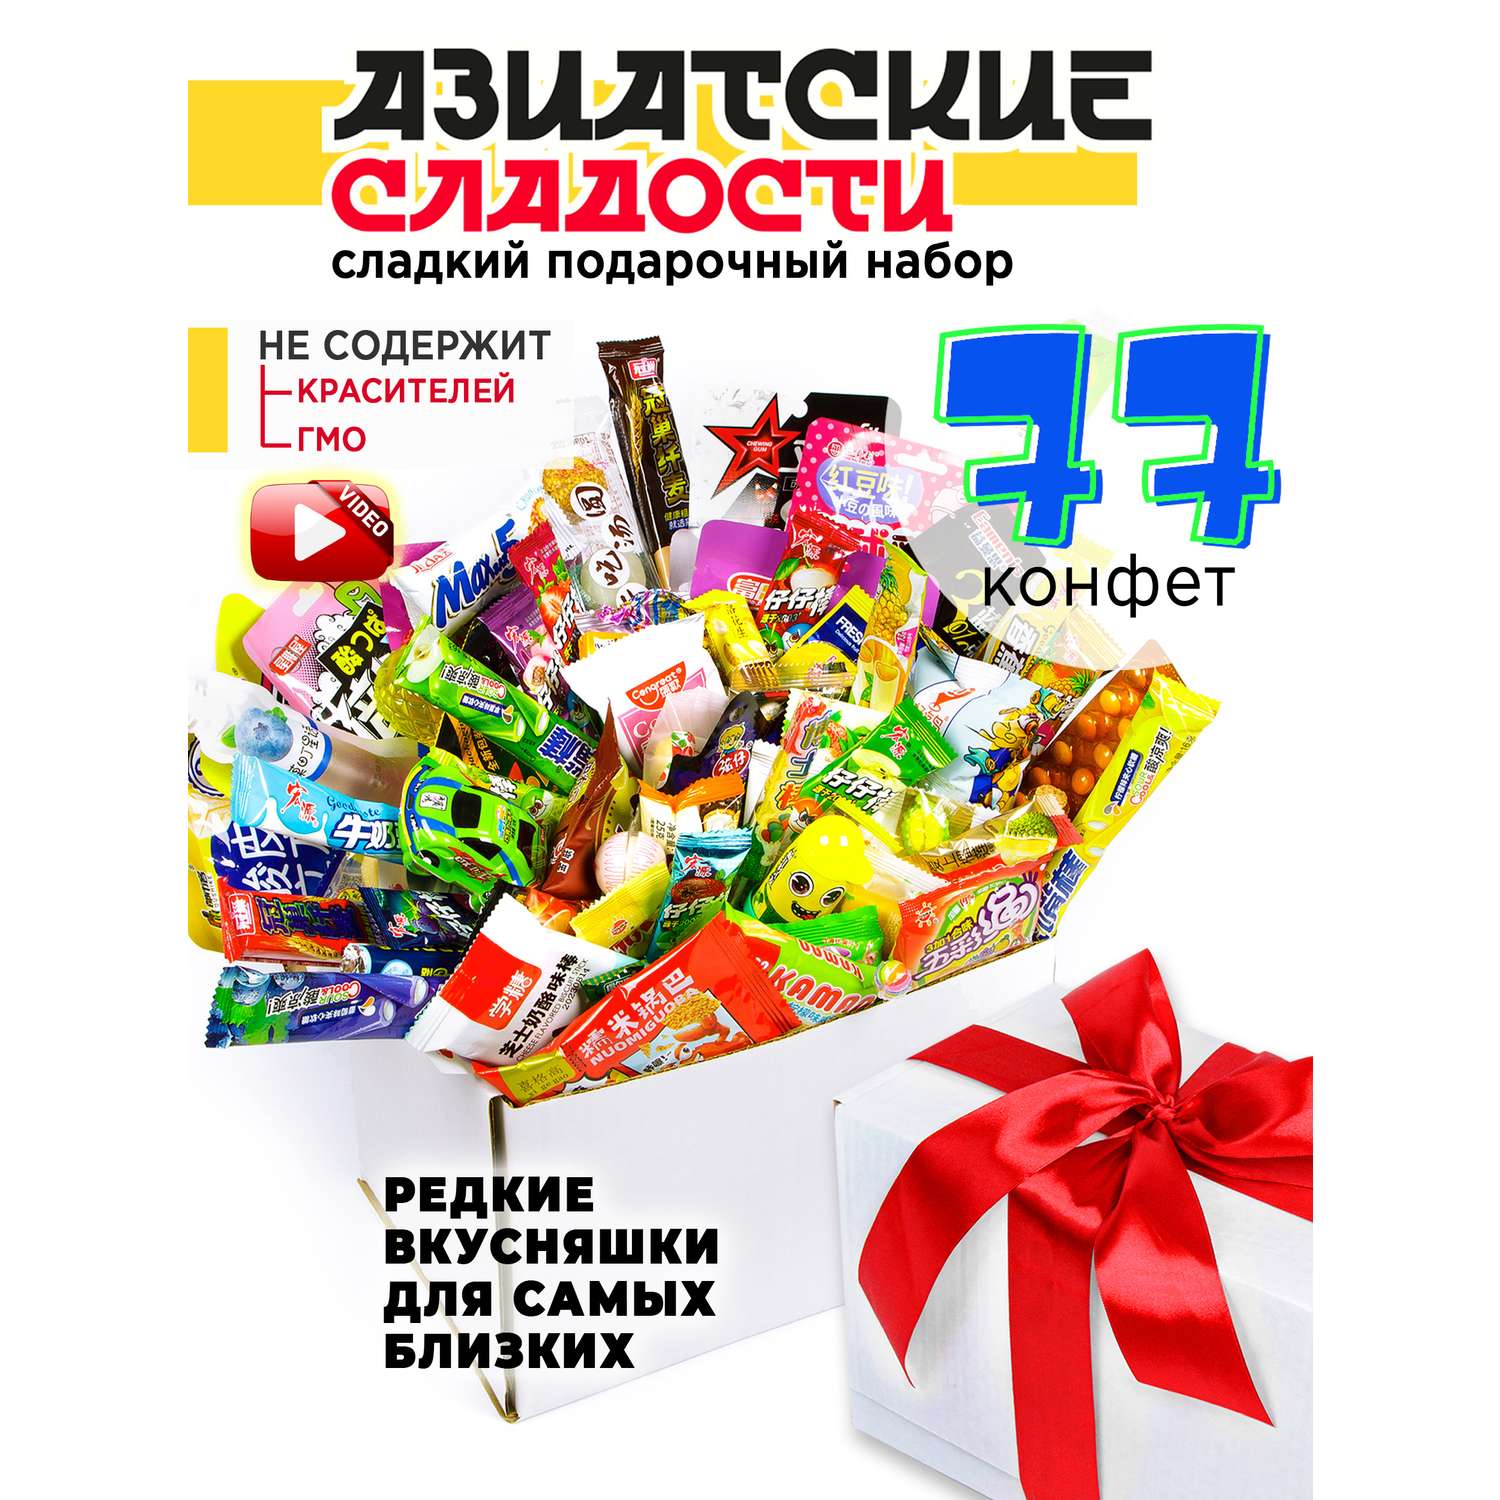 Подарок брату на Новый Год , купить в интернет-магазине сладких подарков - Вкусная помощь